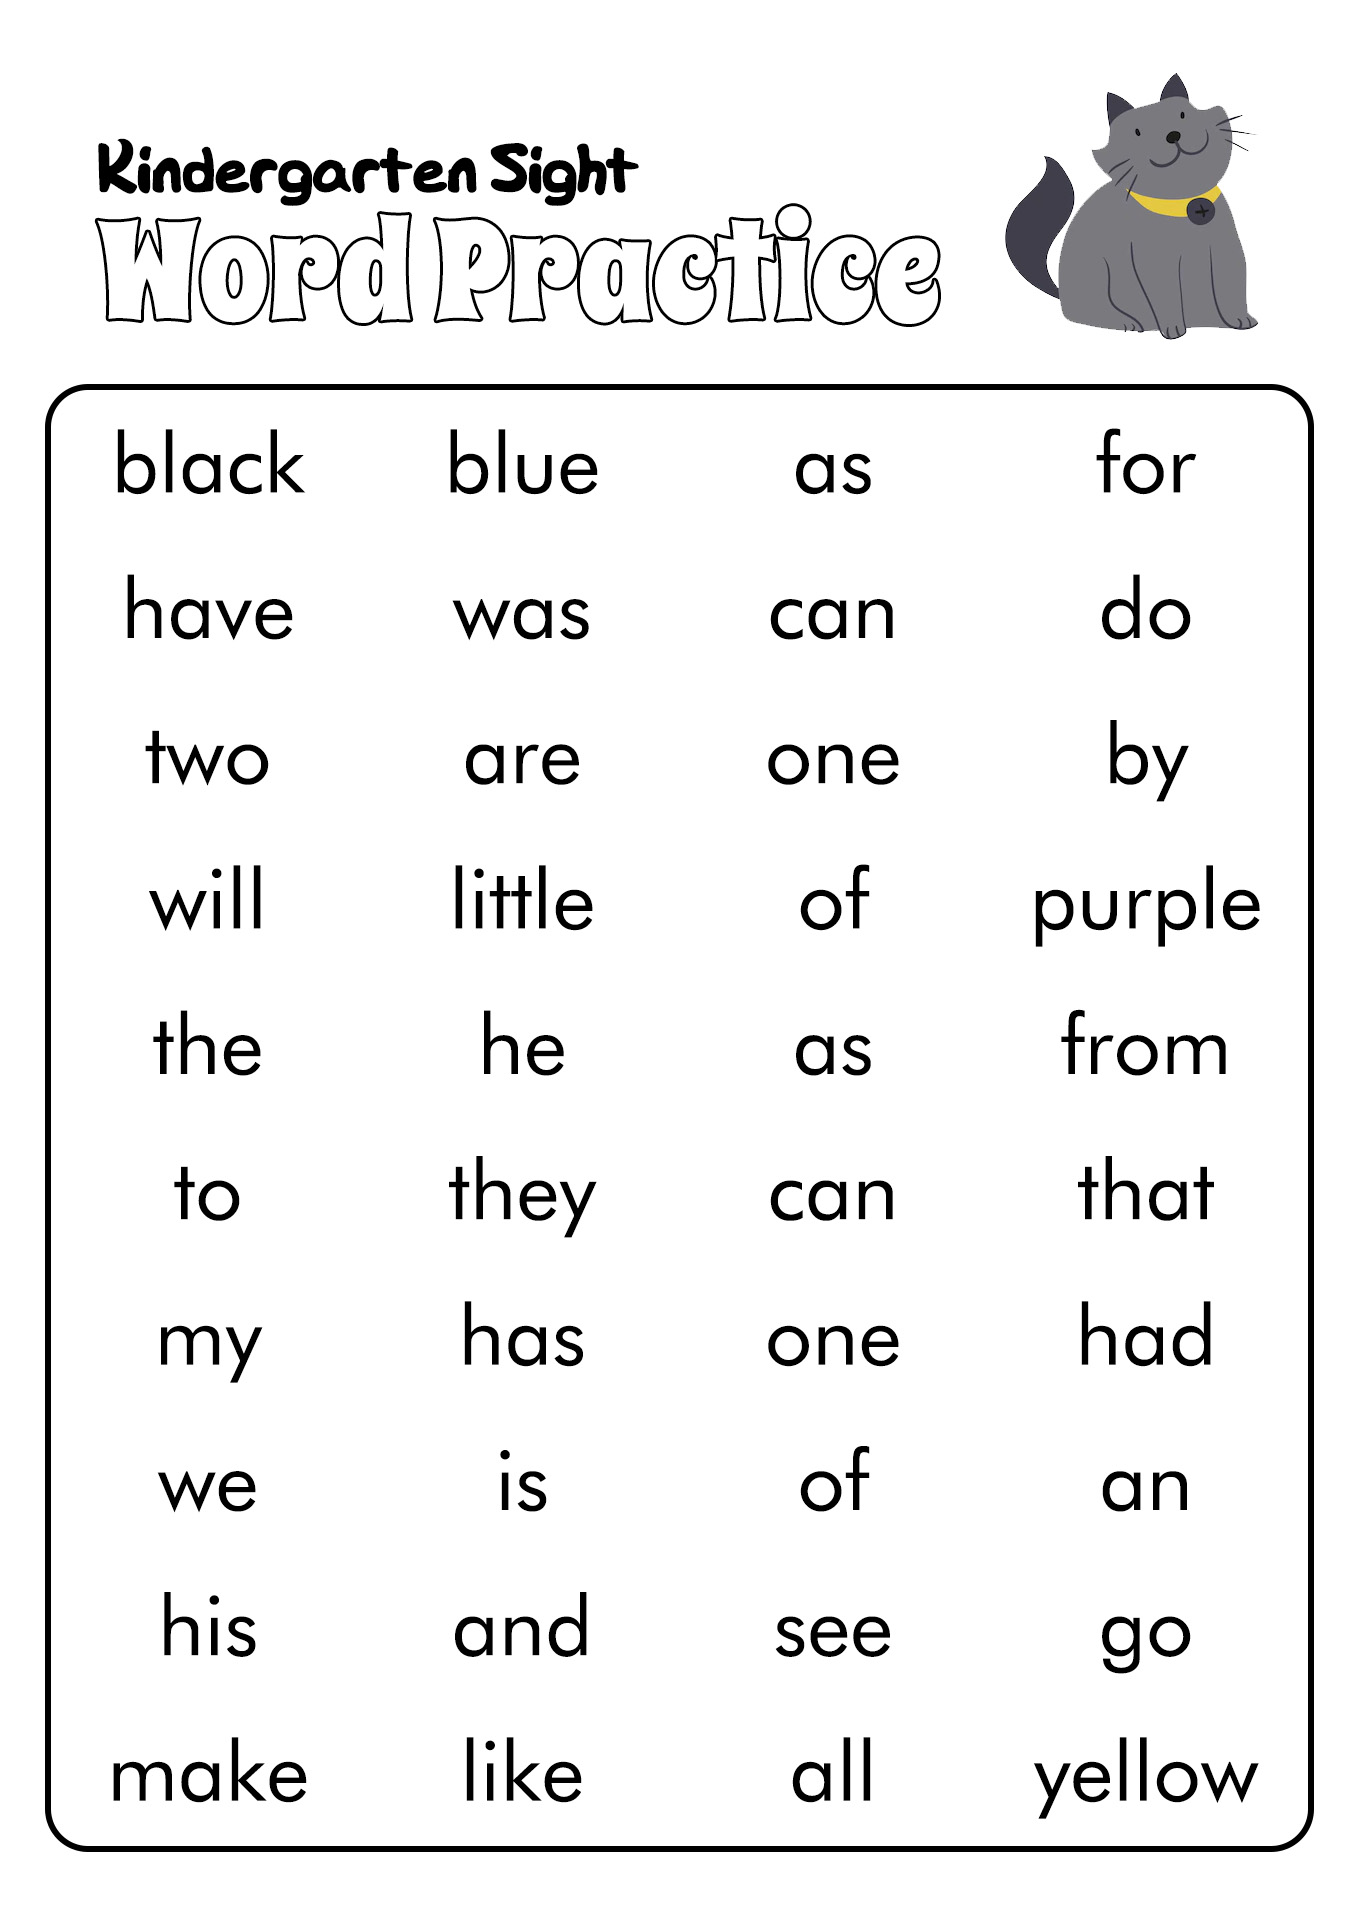 Kindergarten Sight Words List Image